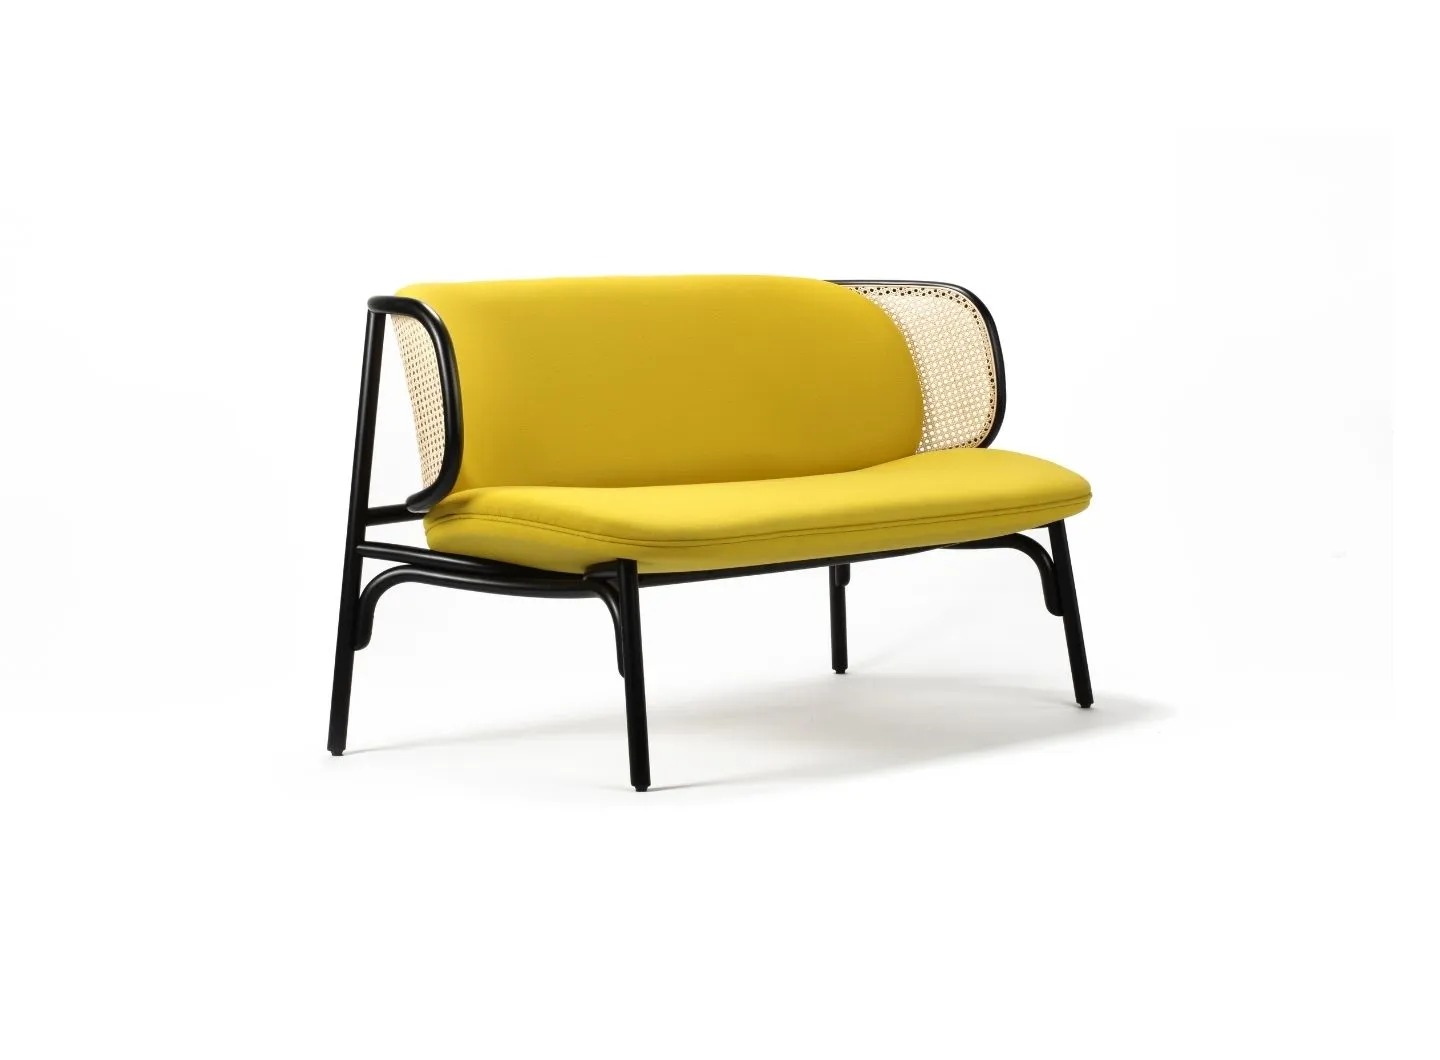 Suzenne sofa design by Chiara Andreatti